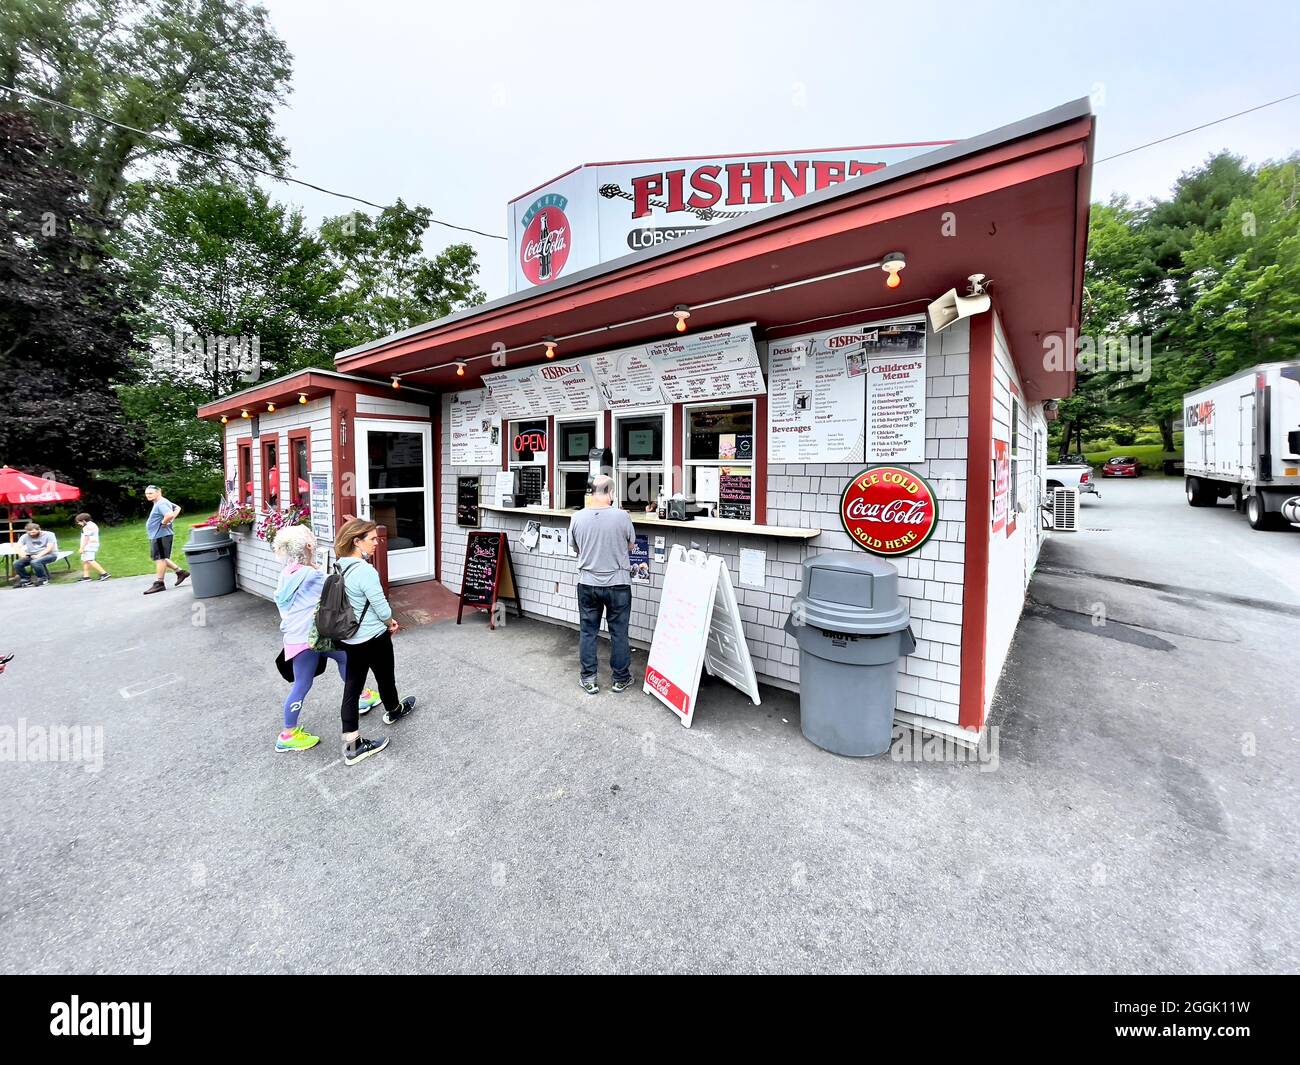 Le restaurant Fish Net de Blue Hill, Maine, est un restaurant de bord de mer à prix réduit proposant des assiettes de homard et de fruits de mer. Banque D'Images